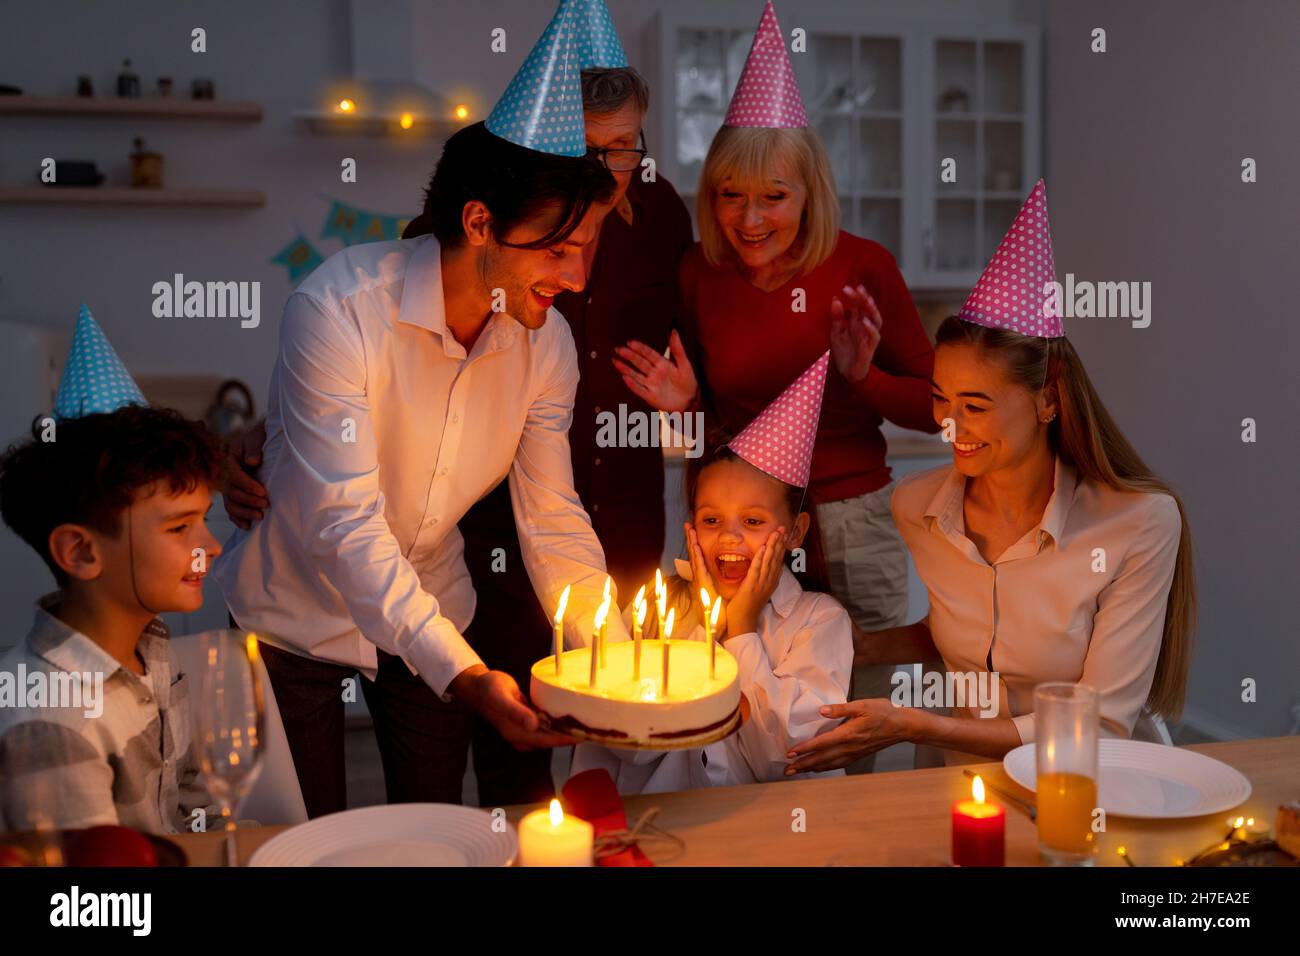 Adorabile bambina ottenere torta di compleanno con candele accese da famiglia amorevole, festeggiando la vacanza a casa in serata Foto Stock